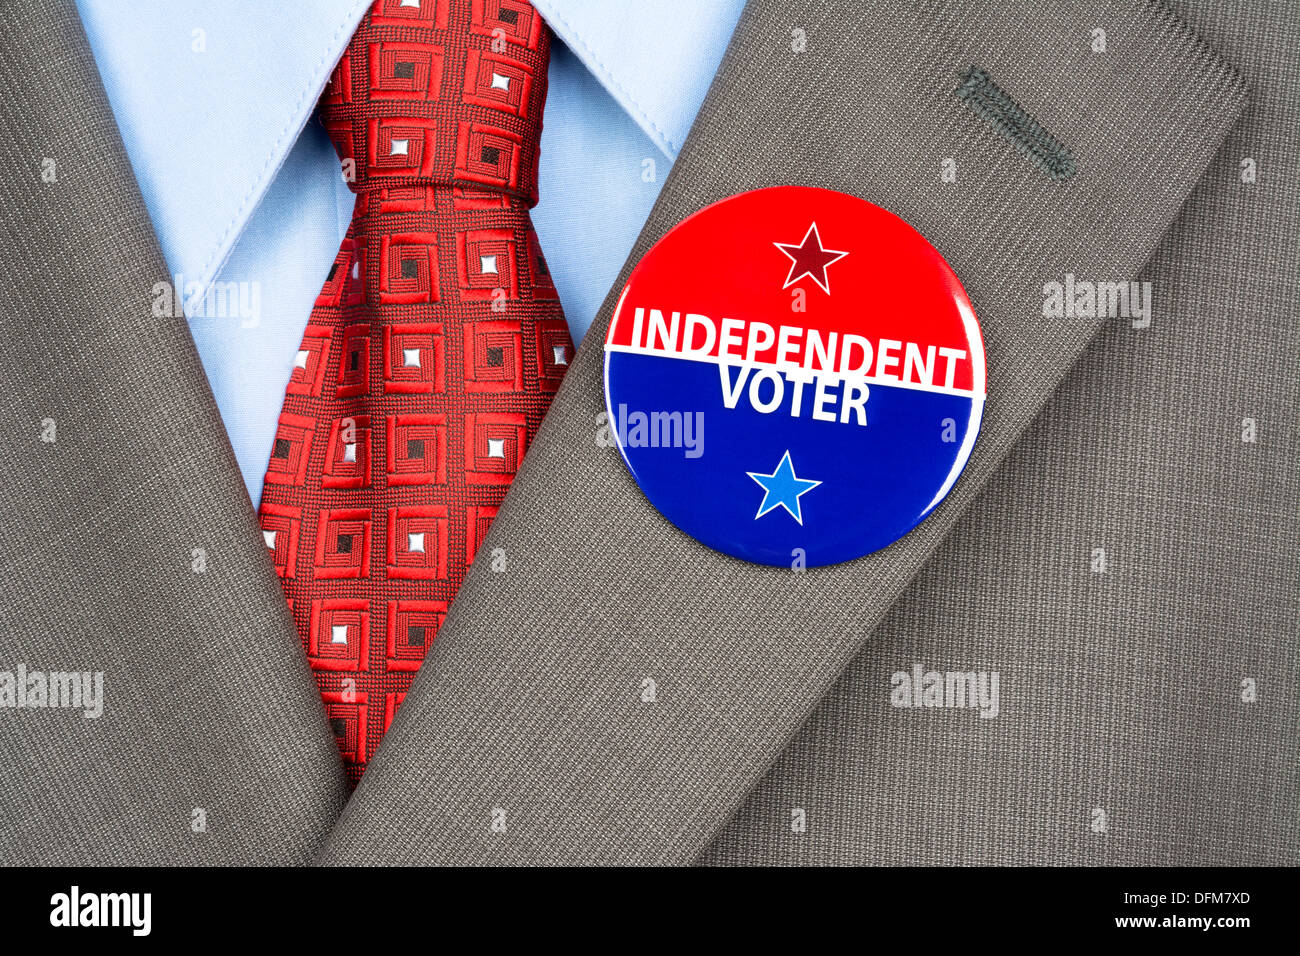 Nahaufnahme einer unabhängigen Abstimmung Abzeichen am Revers Anzug Jacke eine amerikanische Wähler. Stockfoto